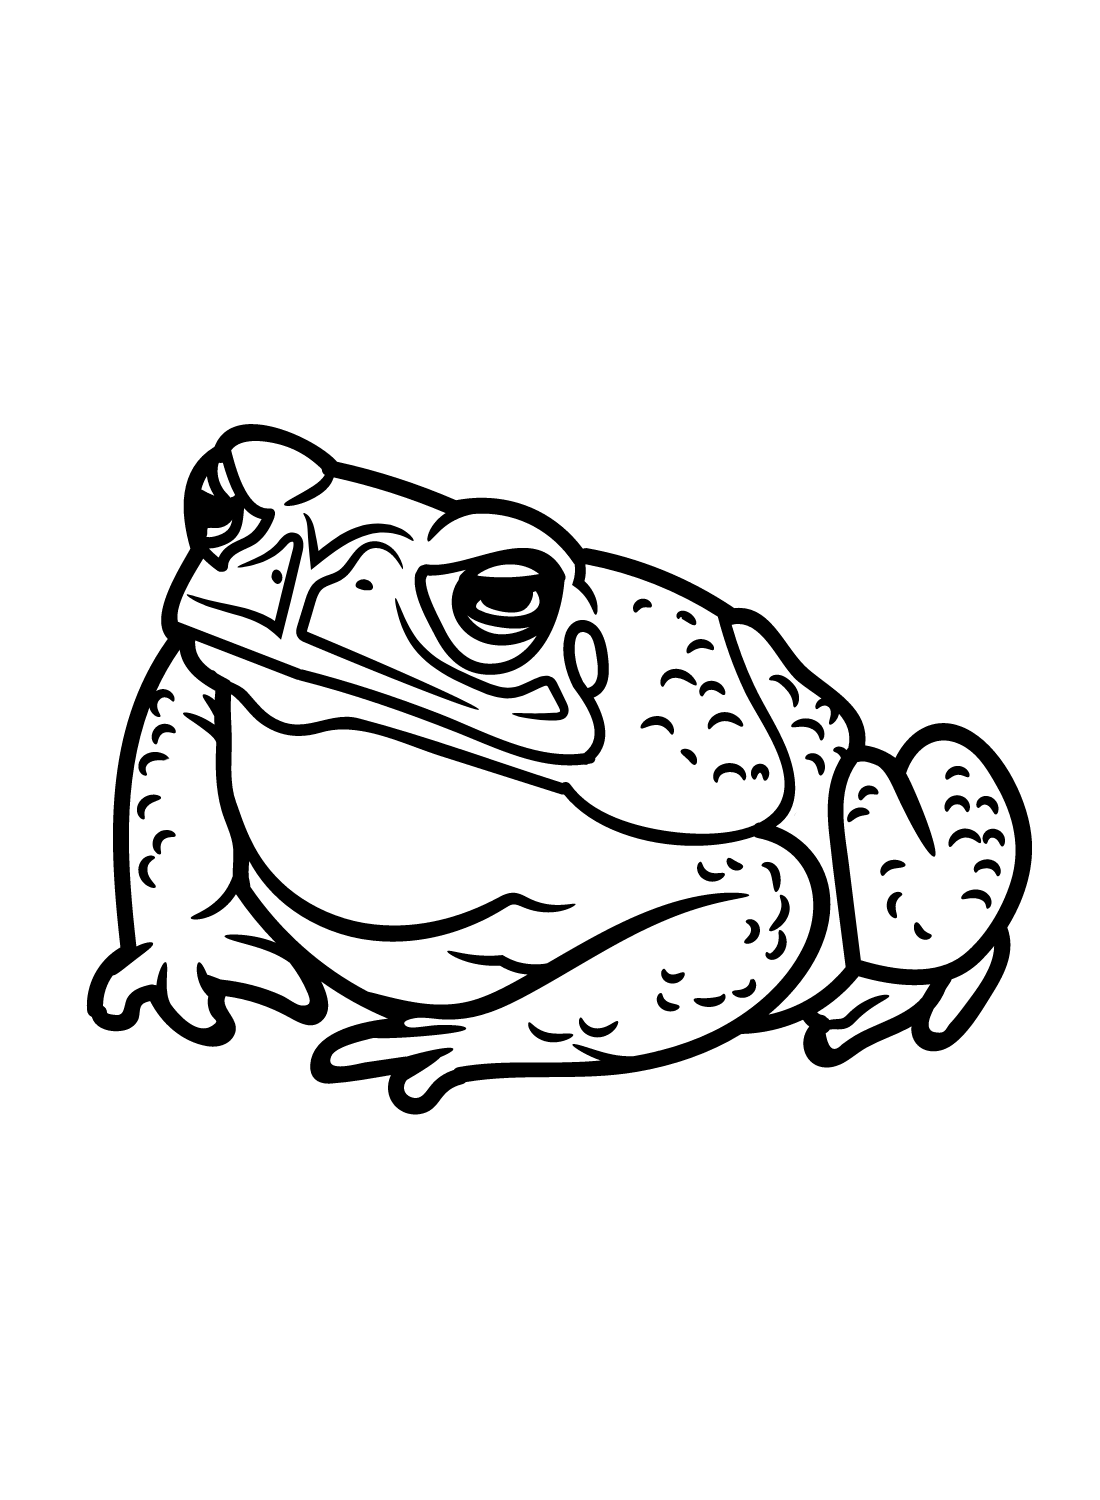 Wütende Kröte von Toad